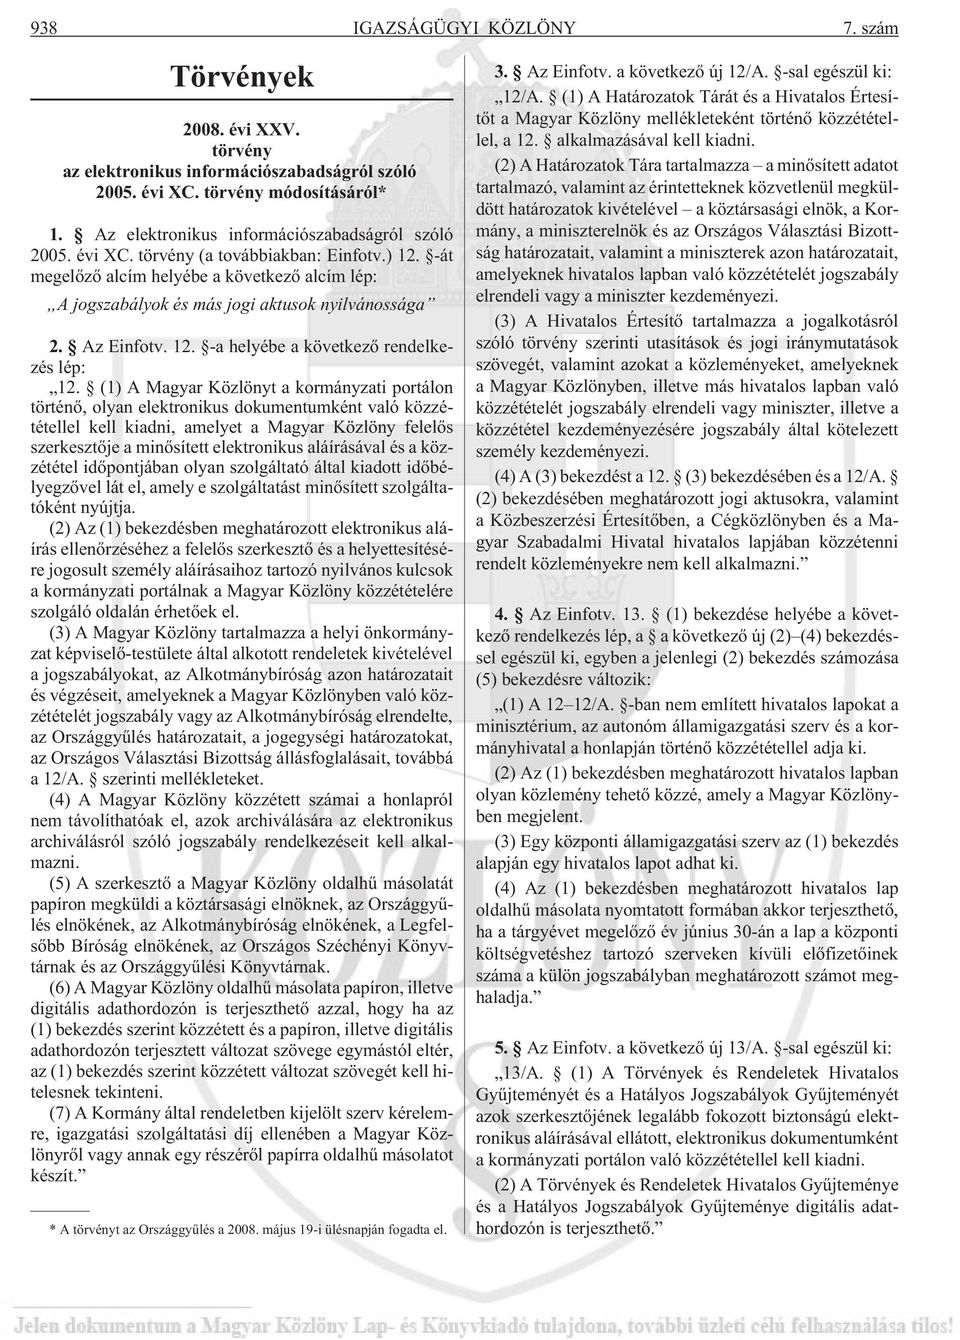 (1) A Magyar Közlönyt a kormányzati portálon történõ, olyan elektronikus dokumentumként való közzététellel kell kiadni, amelyet a Magyar Közlöny felelõs szerkesztõje a minõsített elektronikus